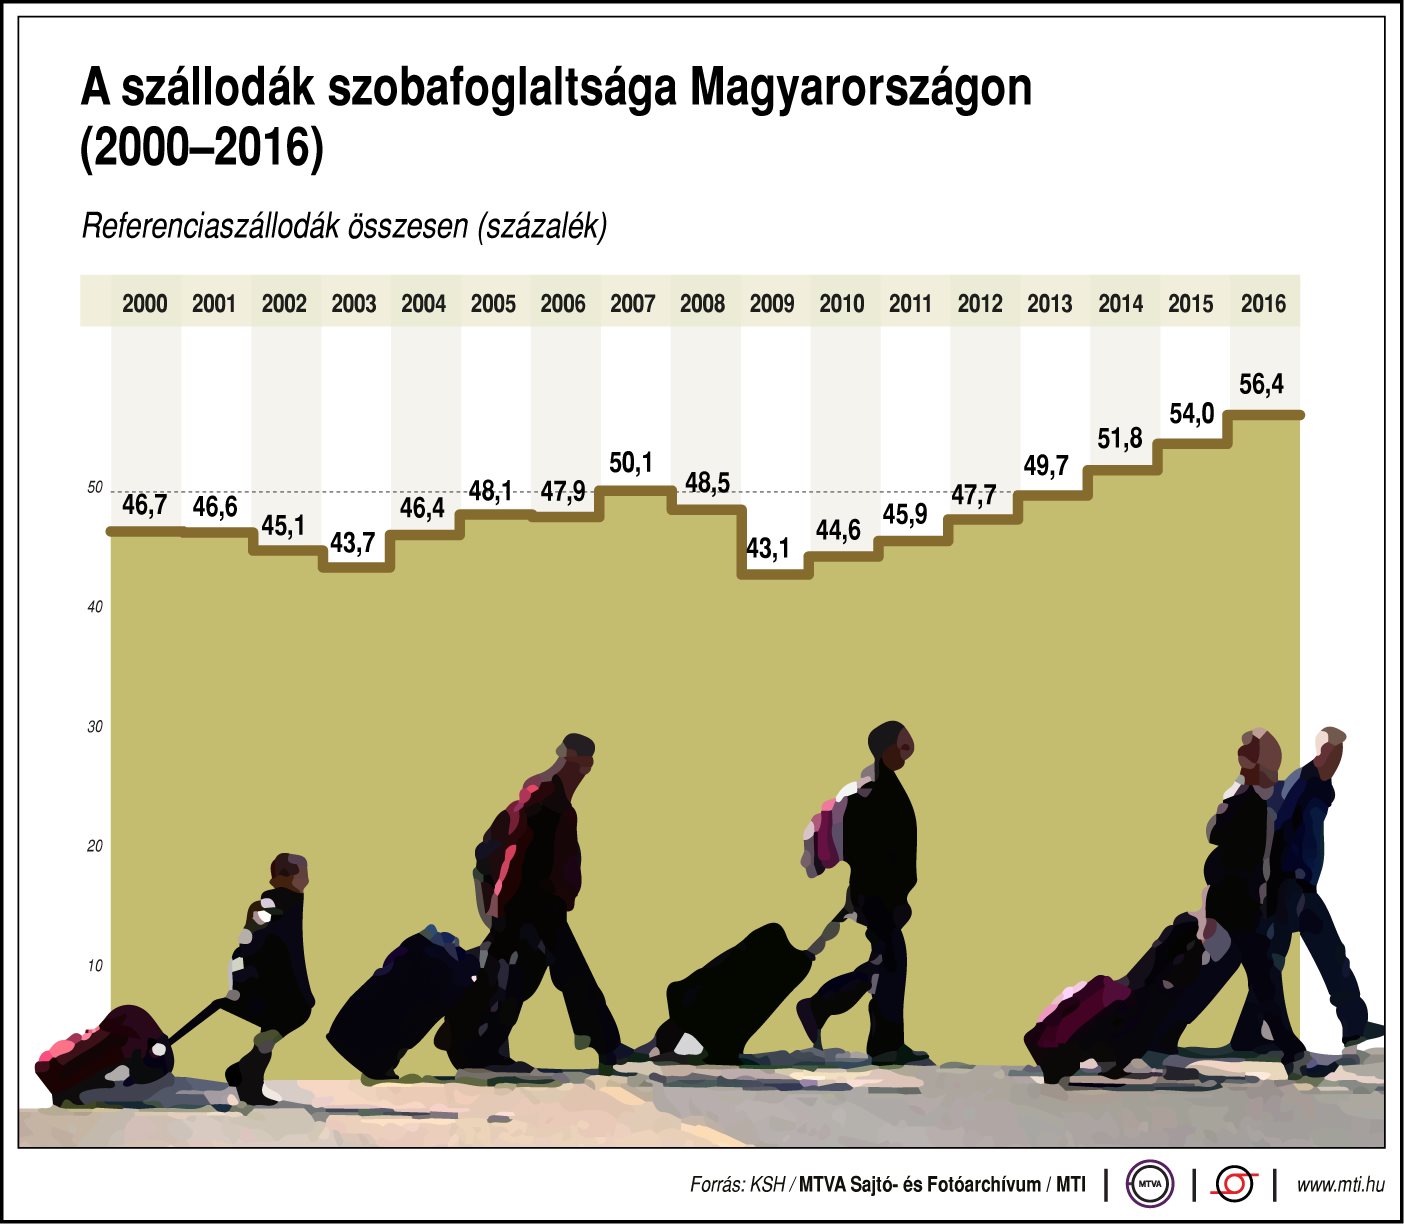 A szállodák szobafoglaltsága Magyarországon (2000-2016)